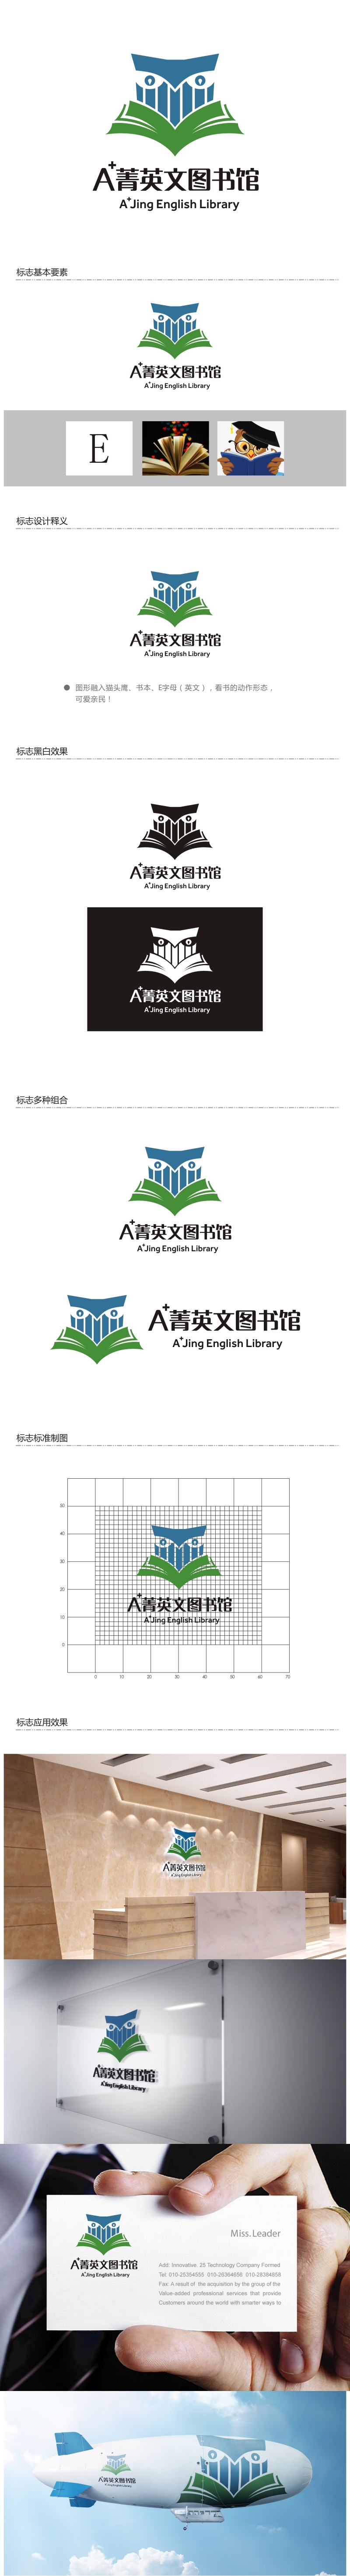 谭家强的A菁英文图书馆logo设计